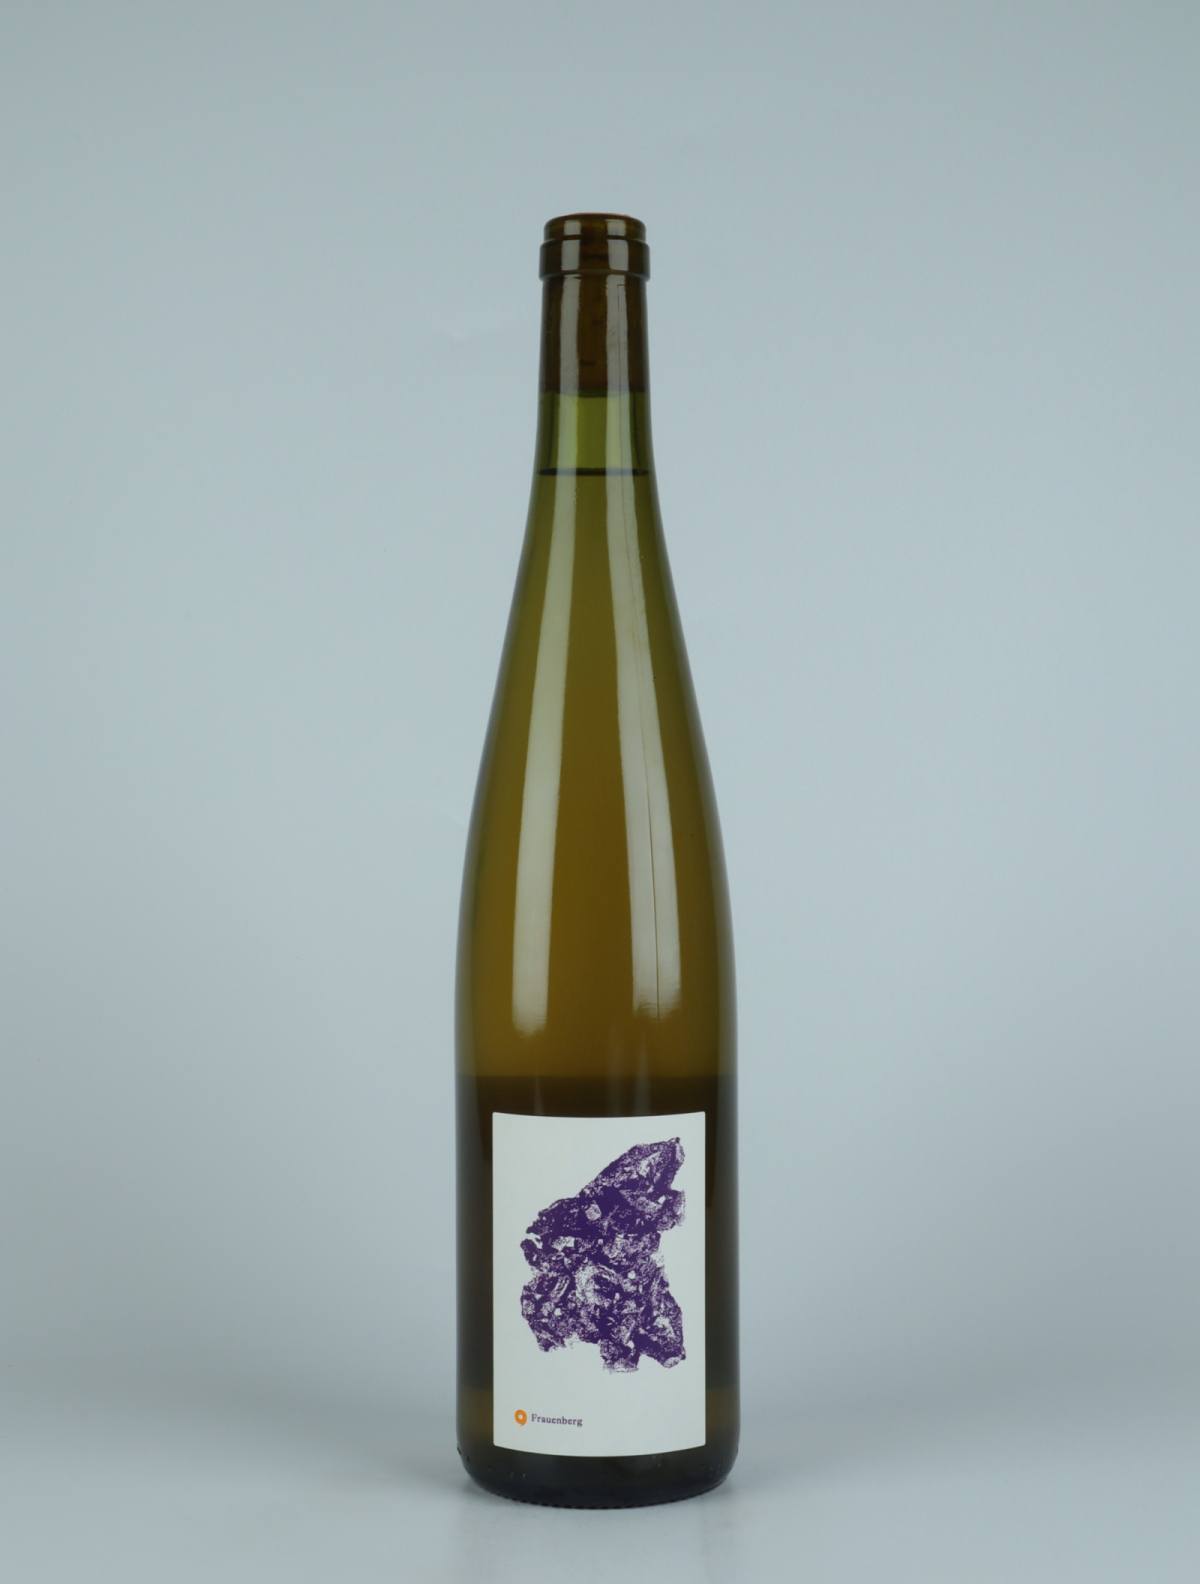 En flaske 2021 Frauenberg Hvidvin fra Léonard Dietrich, Alsace i Frankrig